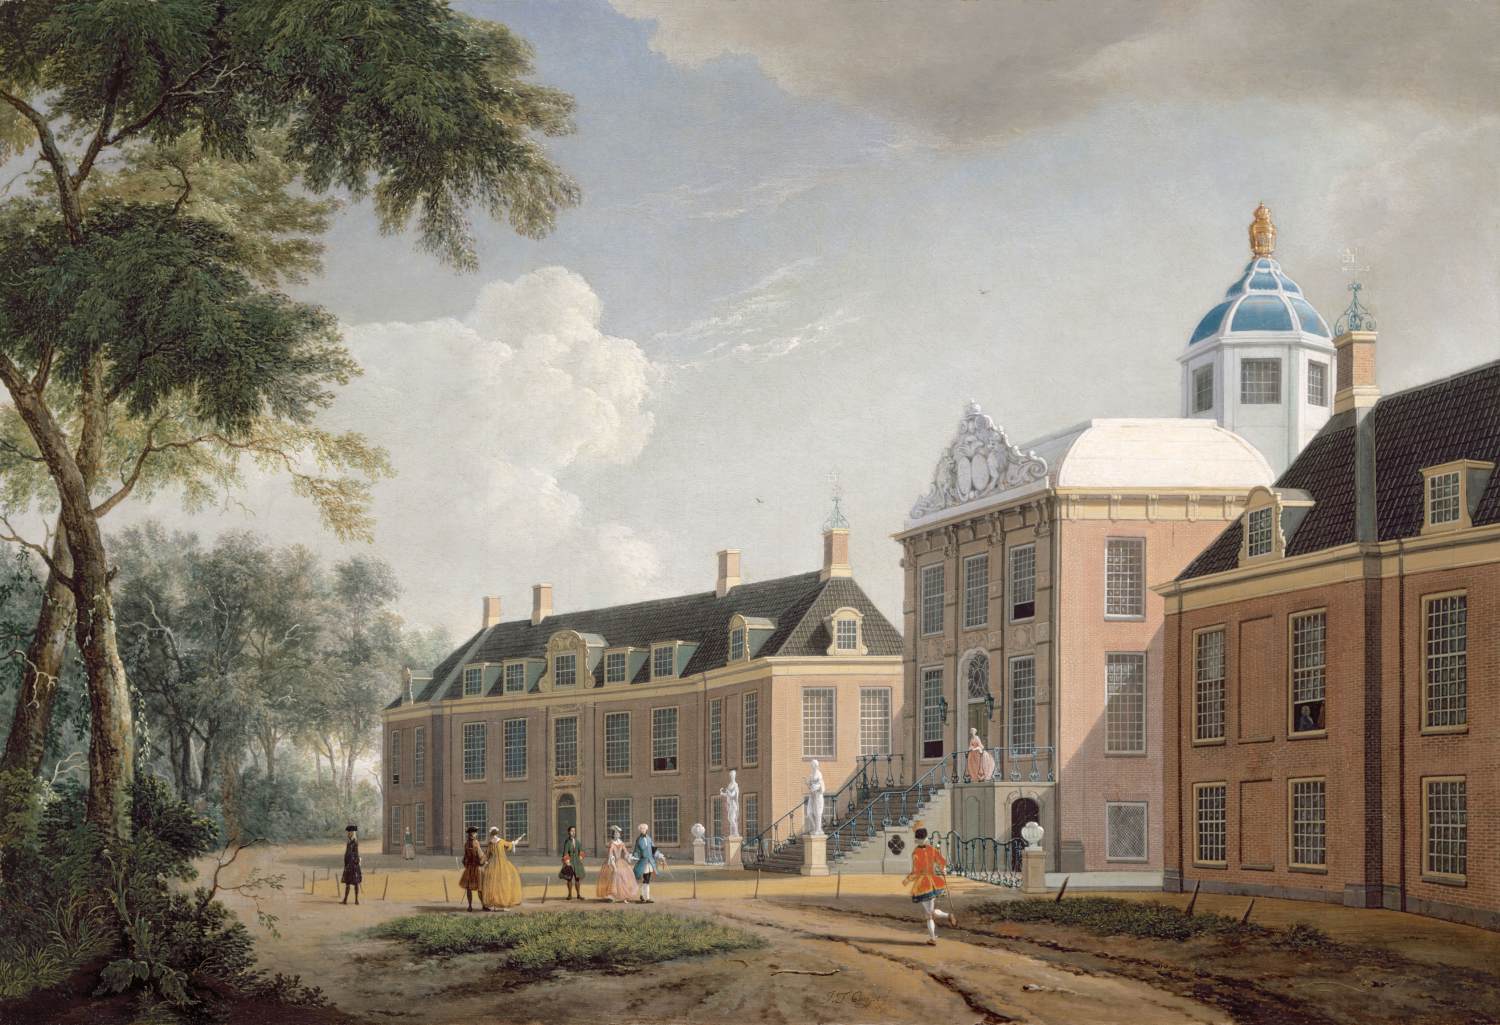 Huis Ten Bosch Sarayı'nın görünümü